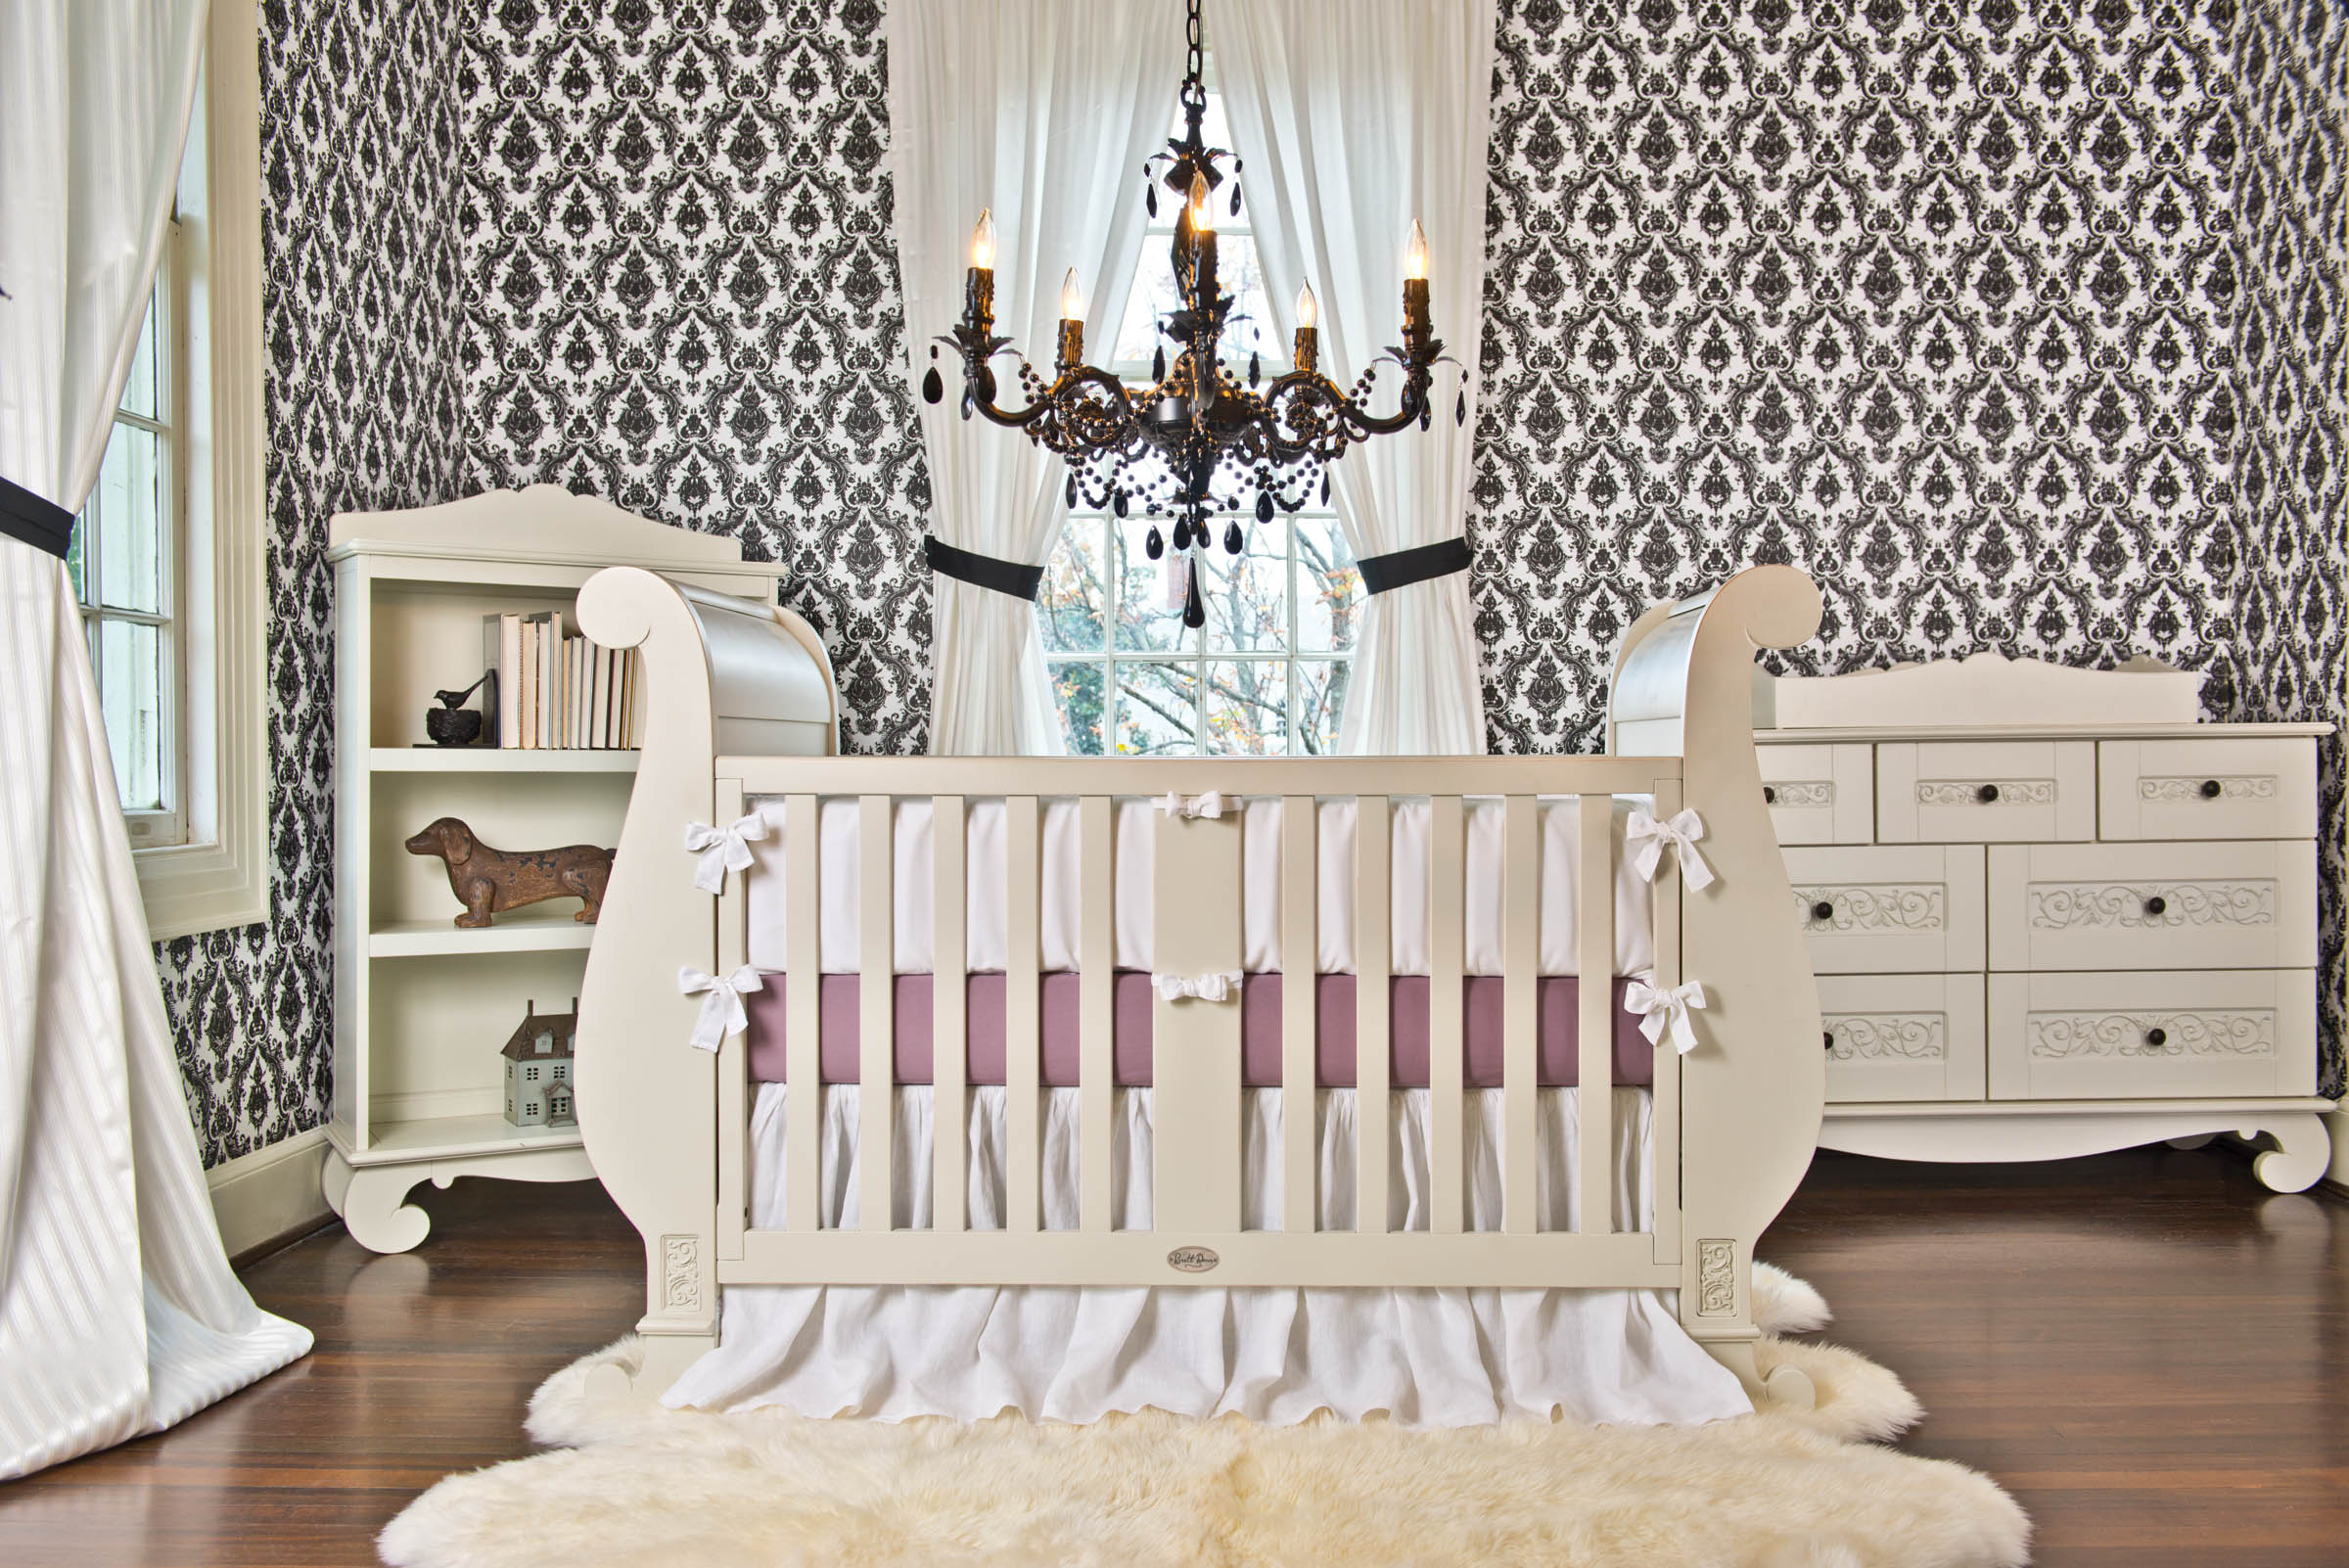 Chelsea Sleigh Crib from Bratt Decor